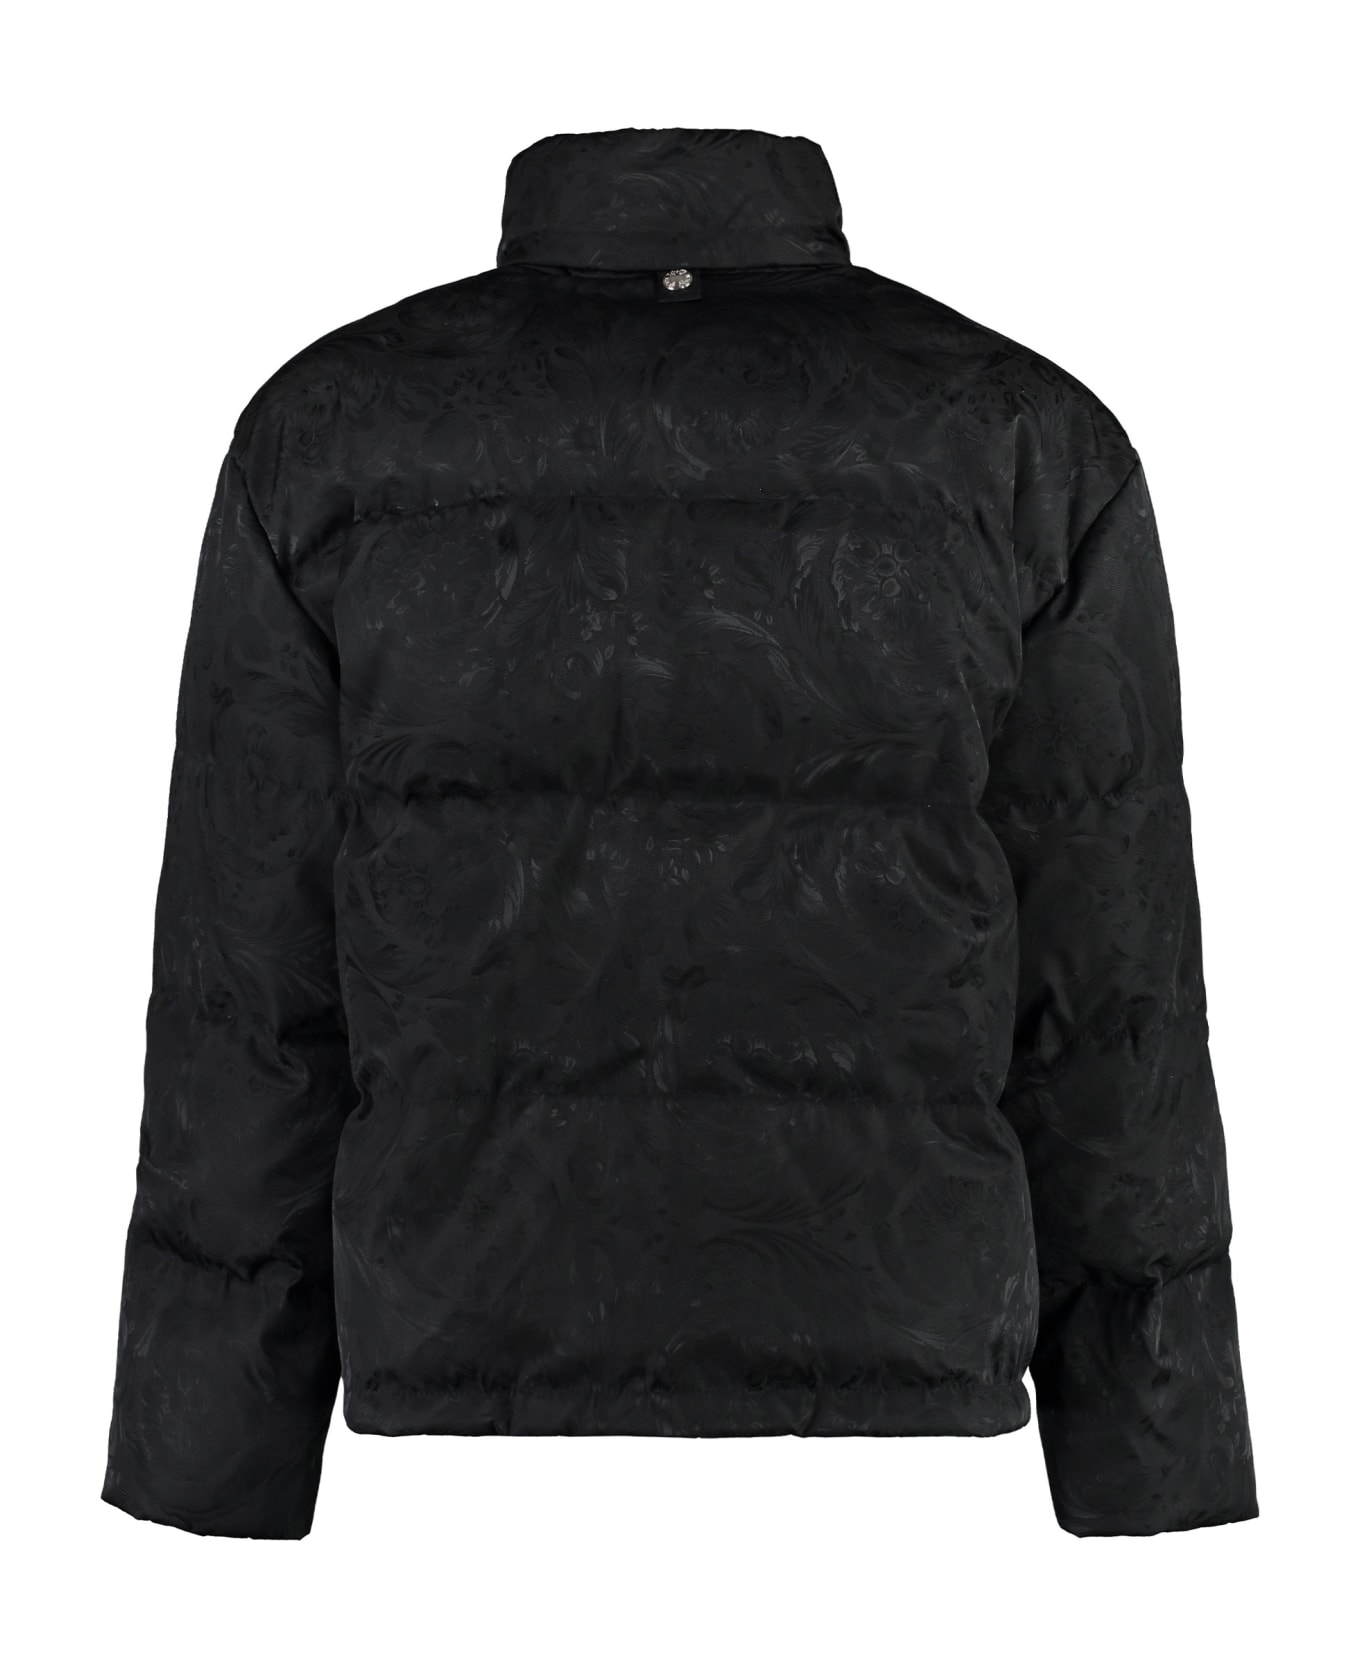 Versace Full Zip Down Jacket - black ダウンジャケット